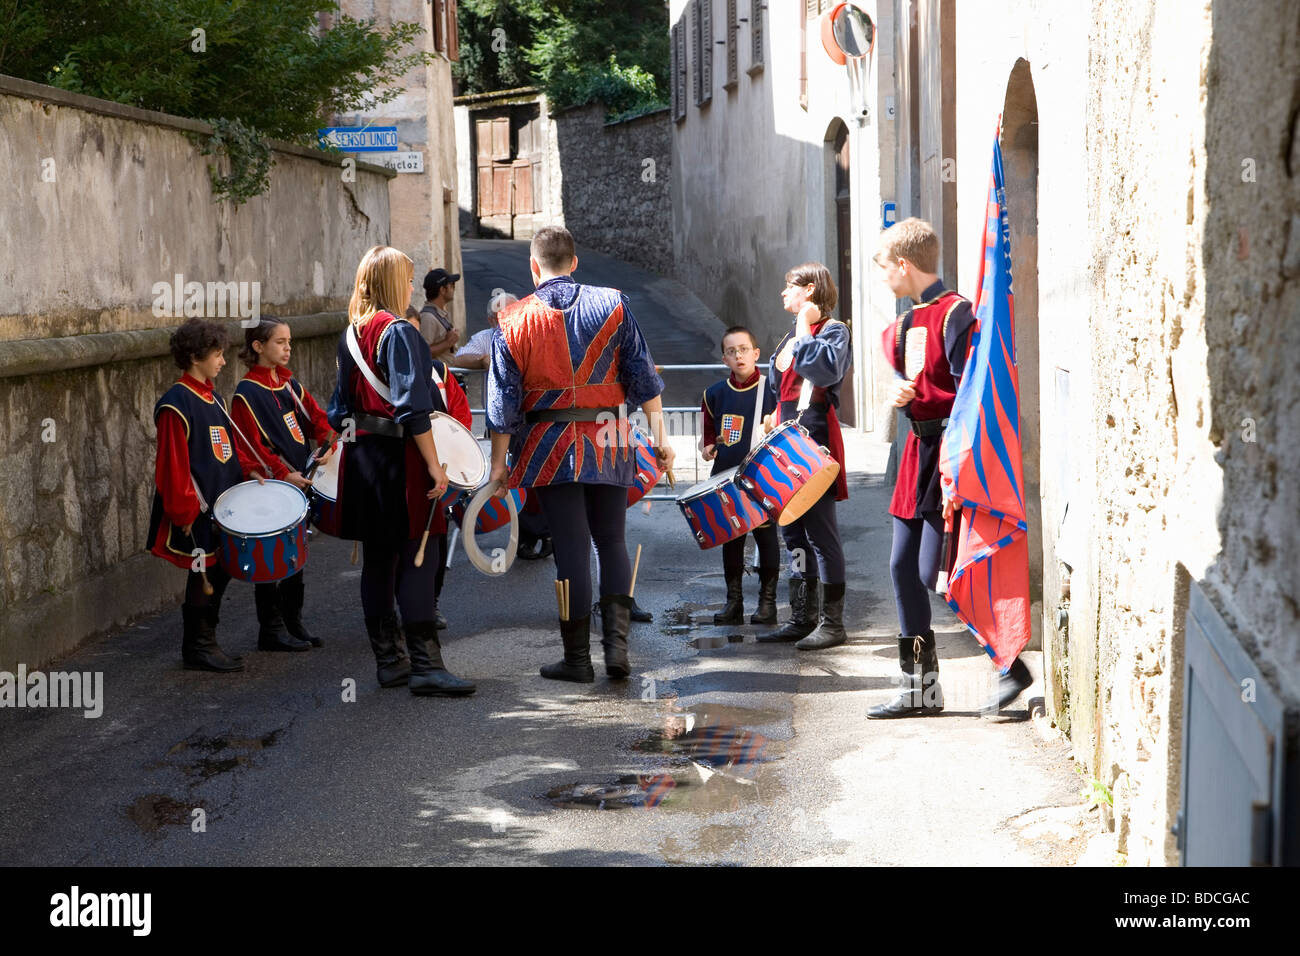 Formando la band in una strada laterale a marzo al centro del villaggio di Ameno, Italia, durante il Palio, un festival estivo annuale Foto Stock